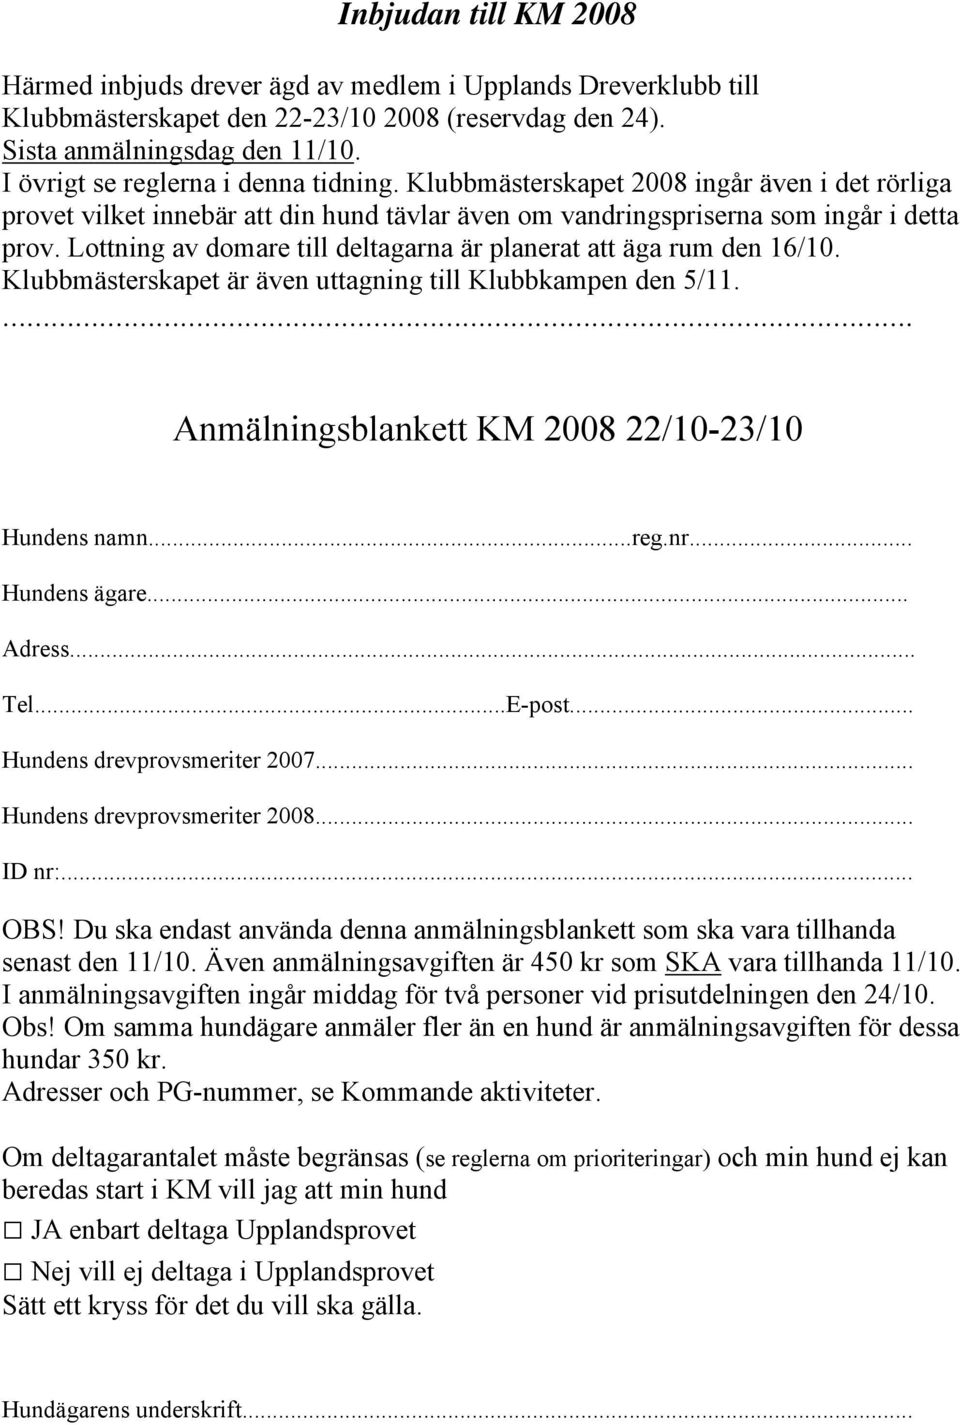 Lottning av domare till deltagarna är planerat att äga rum den 16/10. Klubbmästerskapet är även uttagning till Klubbkampen den 5/11.... Anmälningsblankett KM 2008 22/10-23/10 Hundens namn...reg.nr.